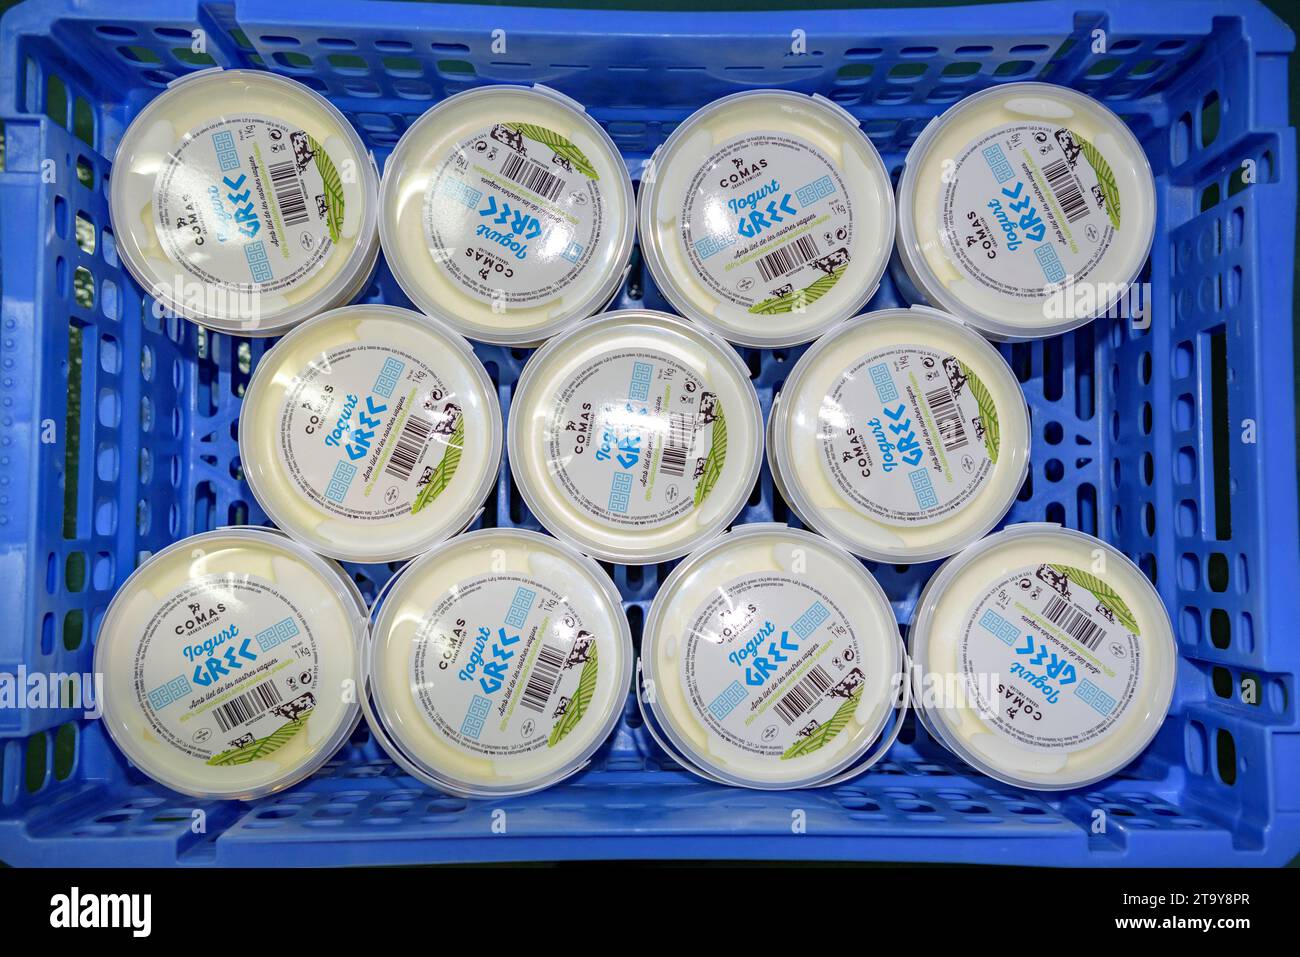 Emballage de divers yaourts dans la salle de travail de la ferme Comas, à Santa Eugènia de Berga (Osona, Barcelone, Catalogne, Espagne) Banque D'Images